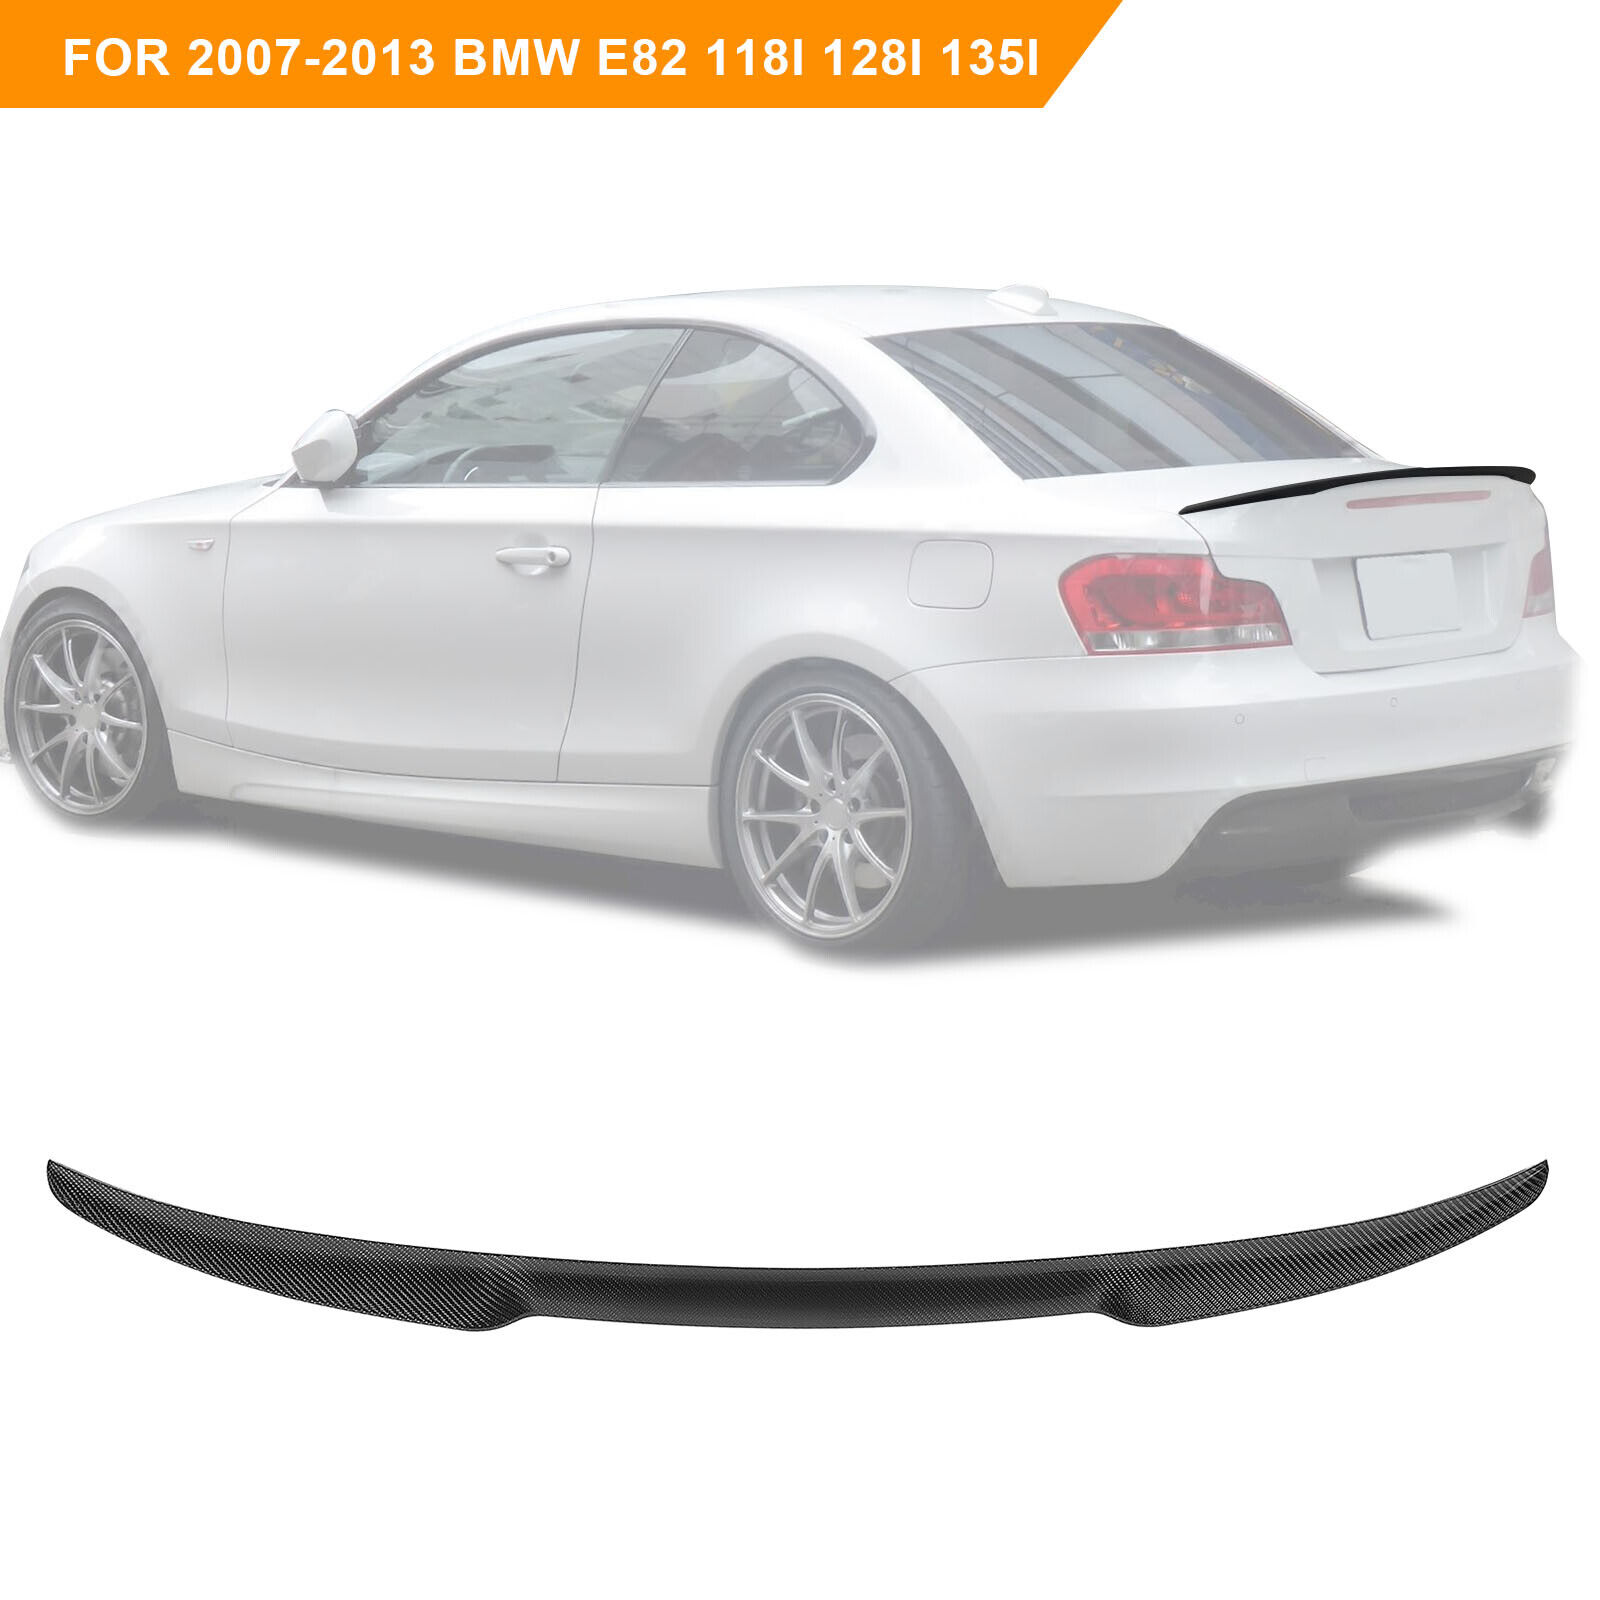 For 2007-2013 BMW E82 118i 128i 135i Coupe Carbon Fiber Rear Spoiler Wing